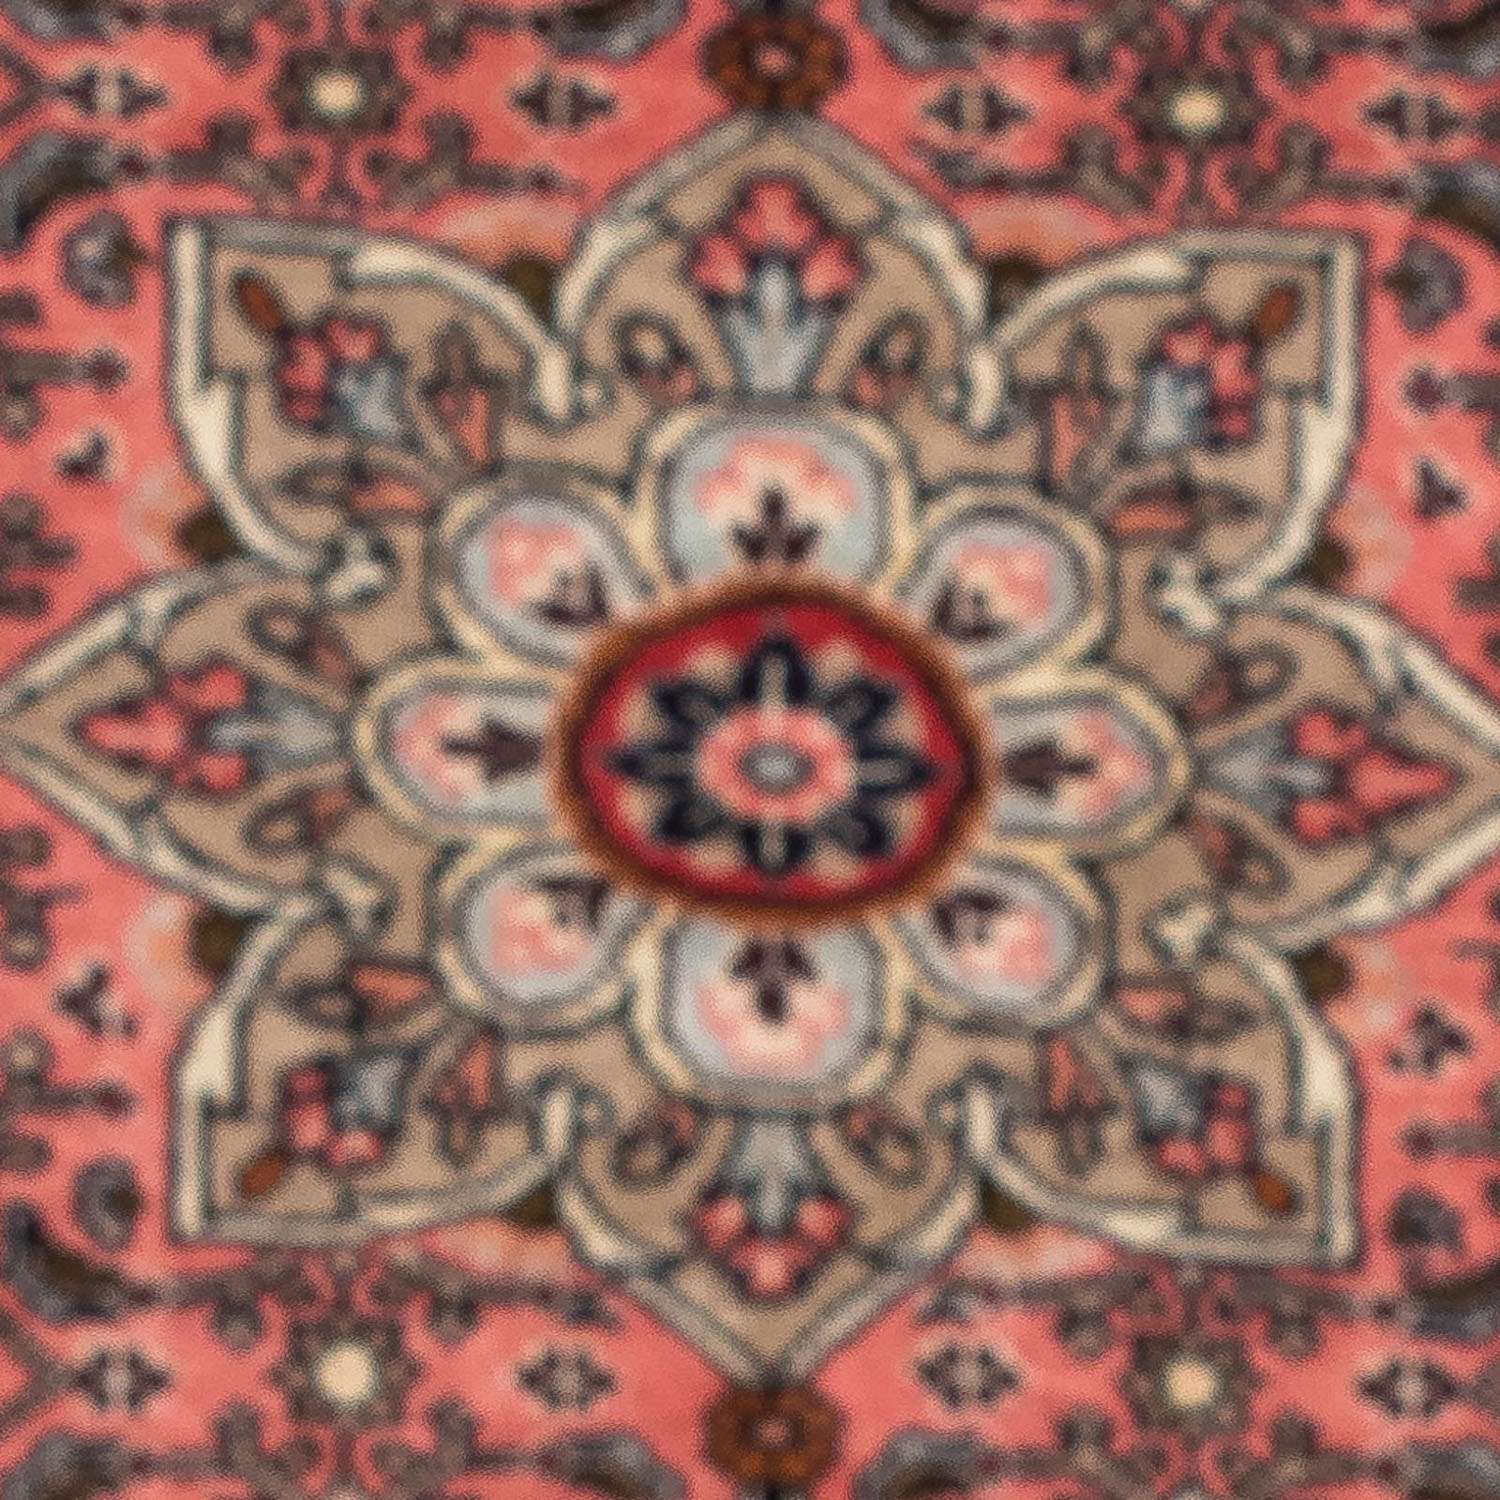 Perski dywan - Nomadyczny - 123 x 75 cm - jasna czerwień